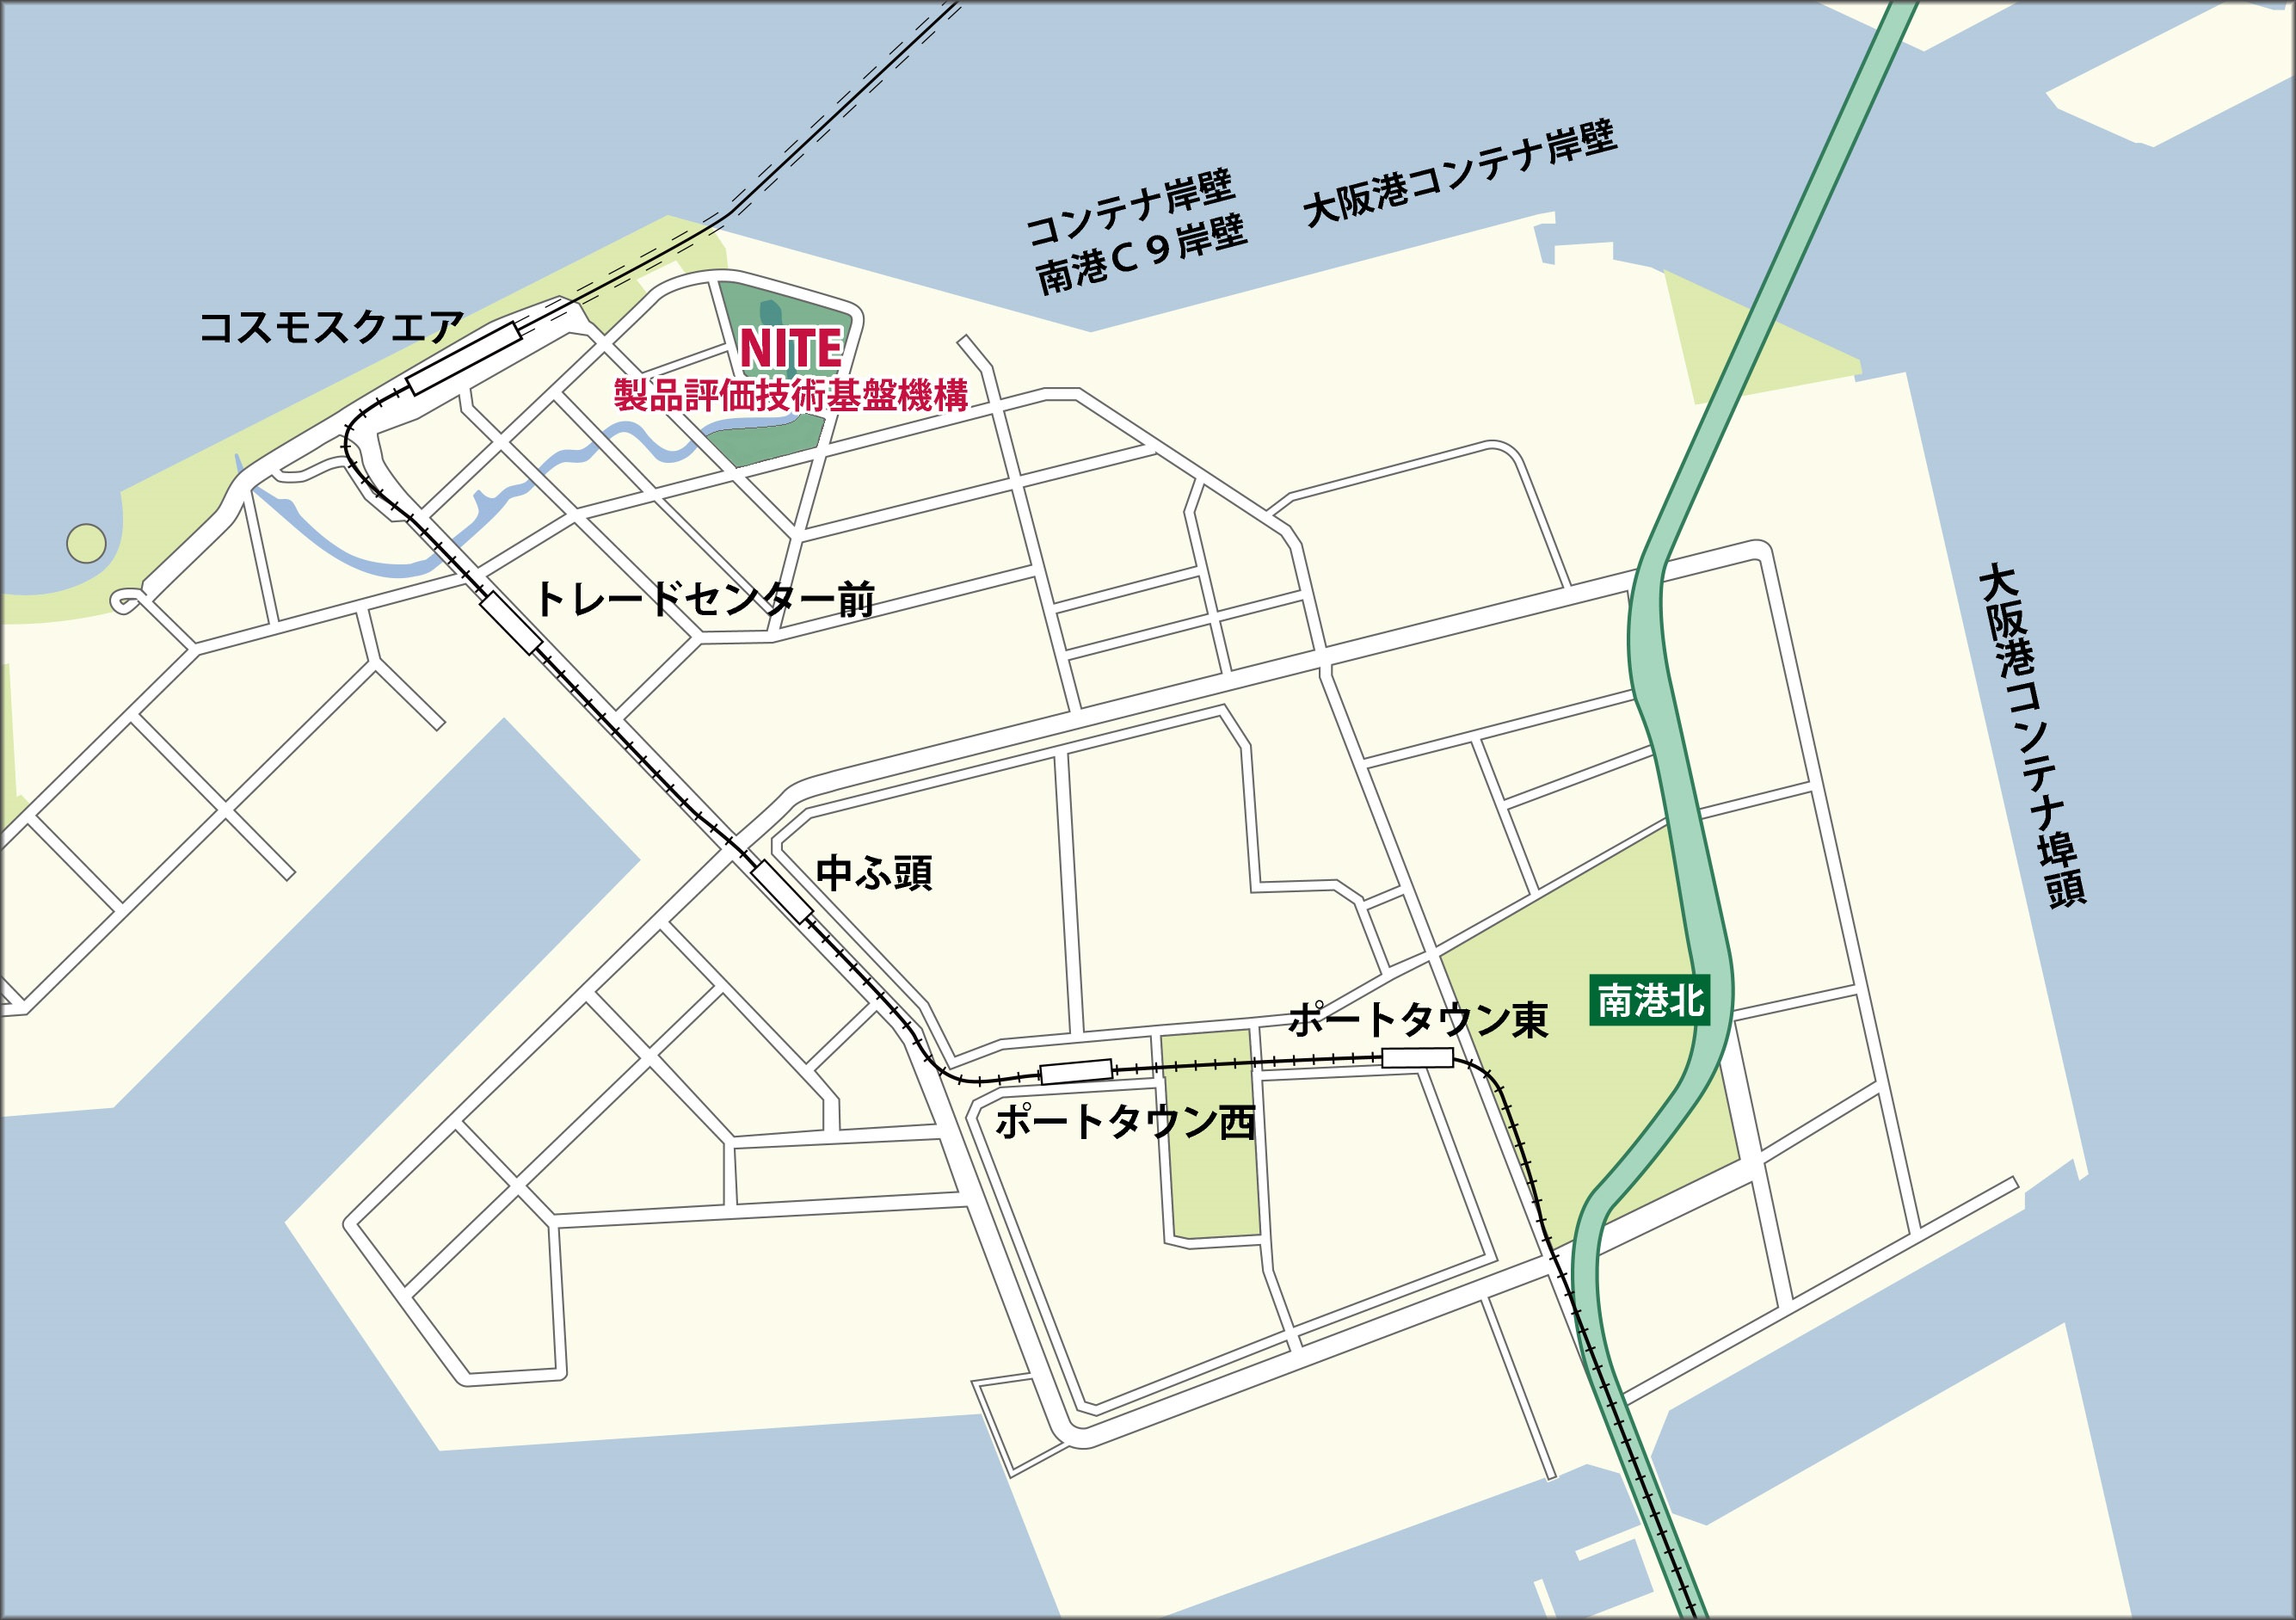 NITE 製品評価技術基盤機構(大阪)  自動車案内地図